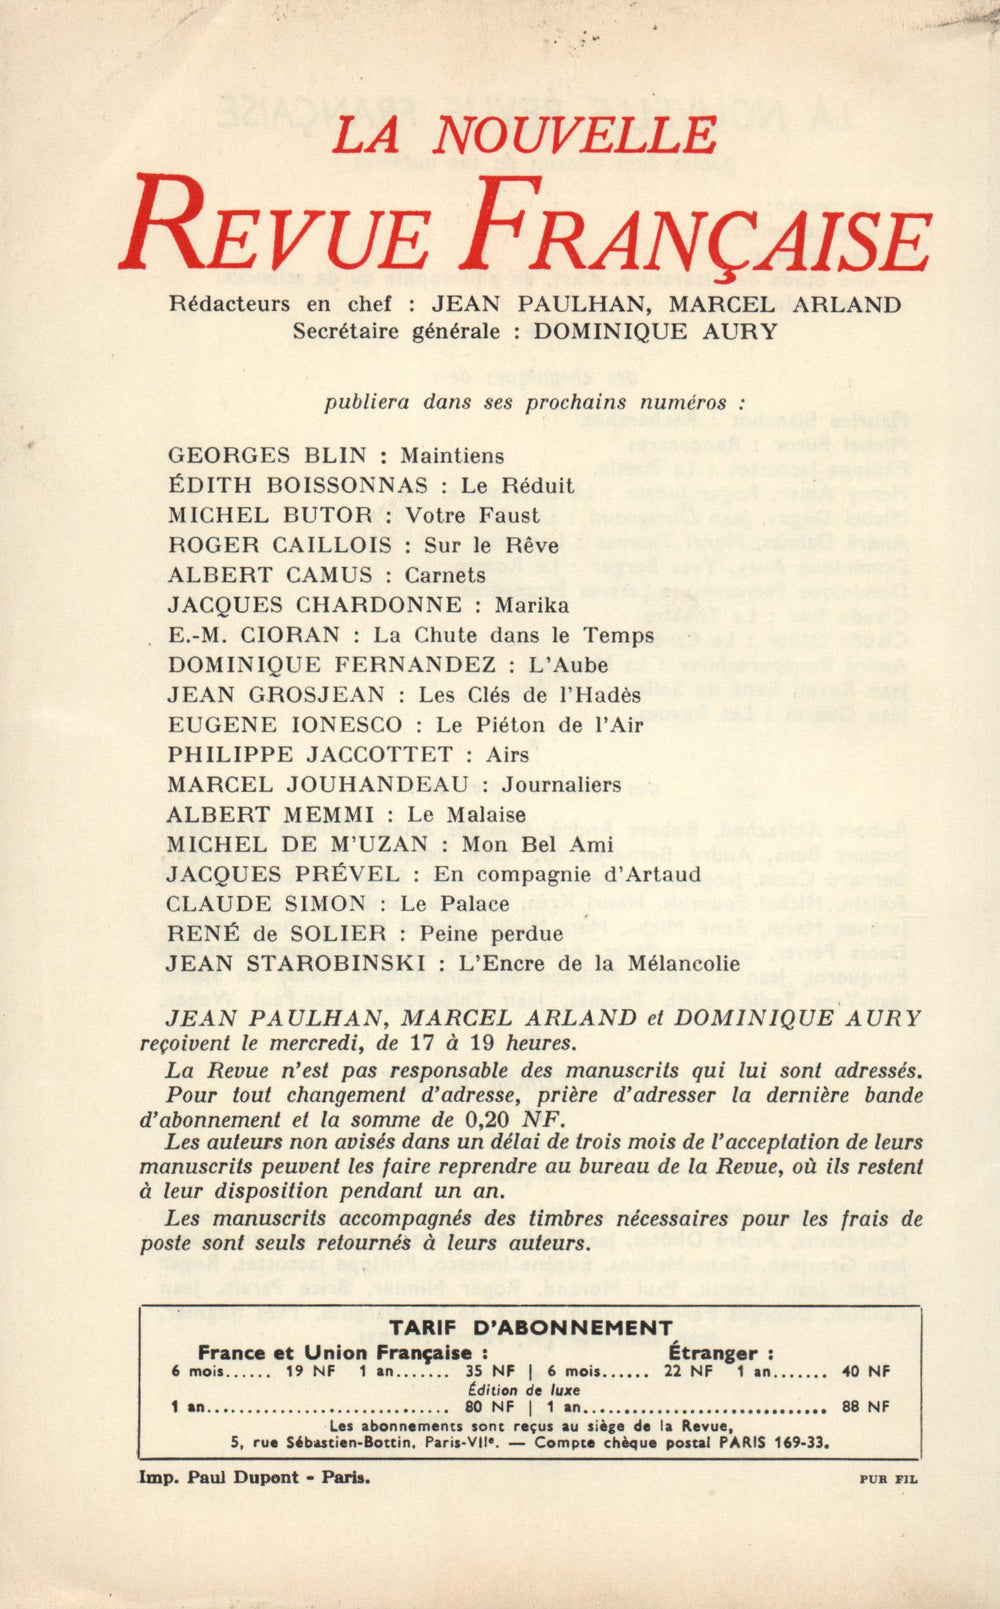 La Nouvelle Revue Française N' 108 (Décembre 1961)